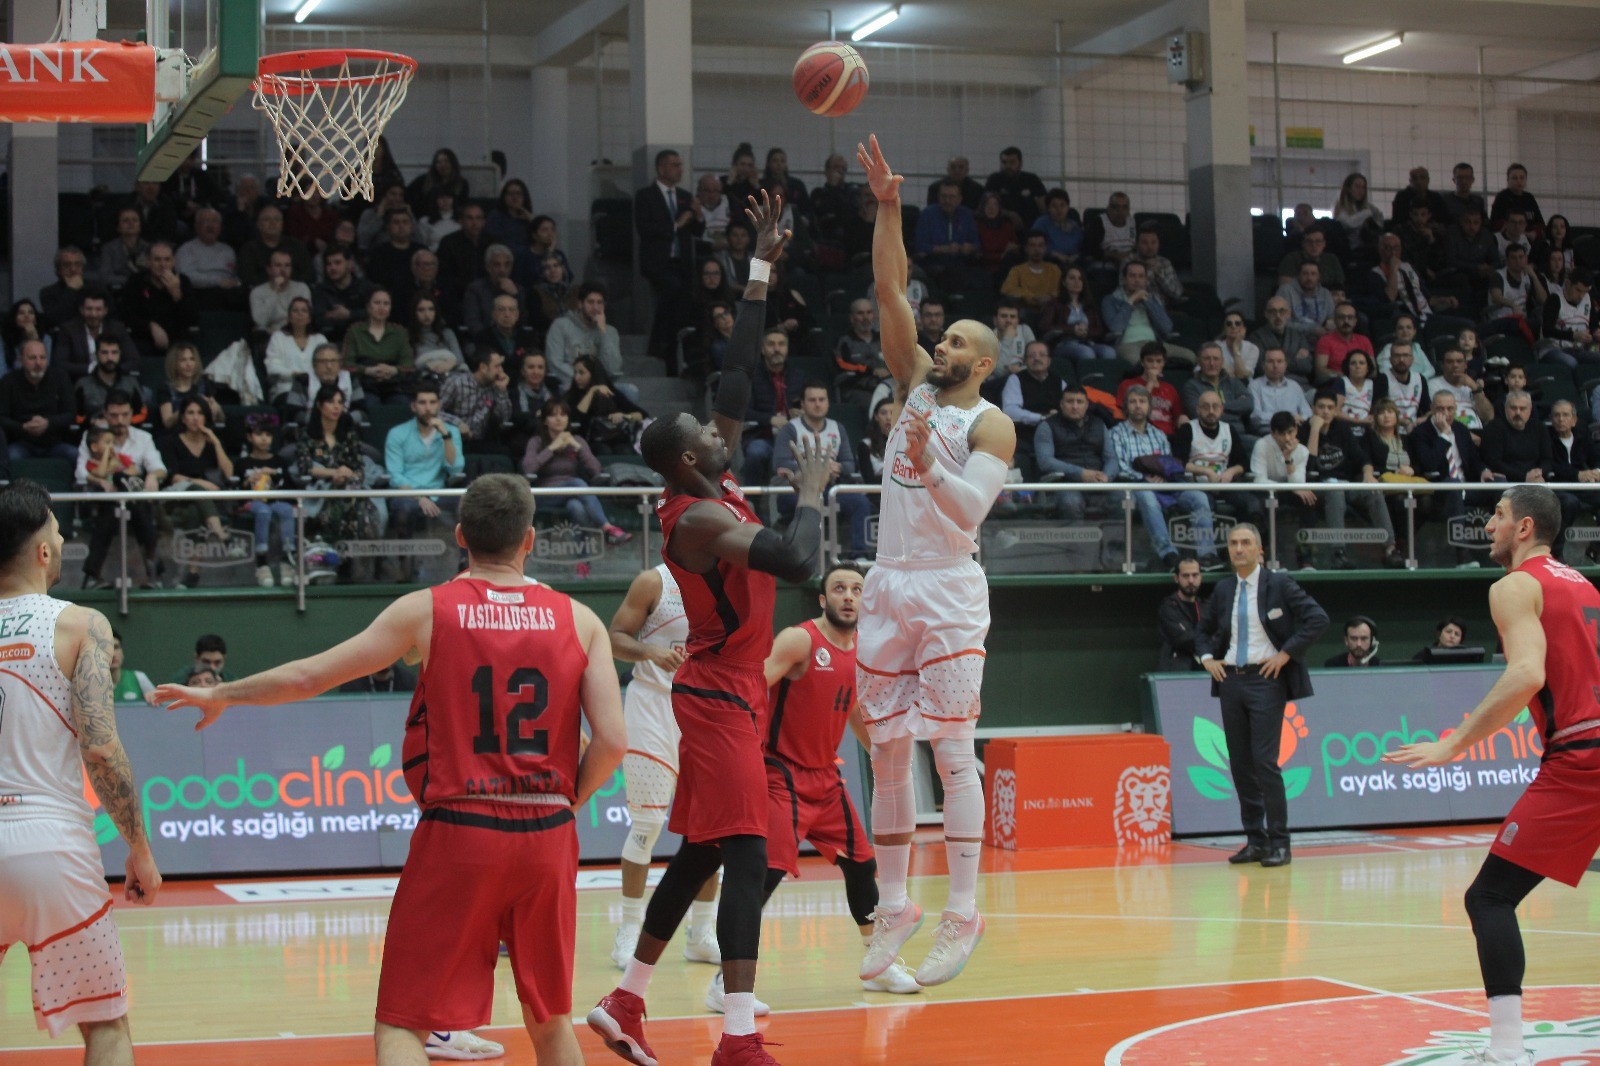 Gaziantep Basketbol, Banvit deplasmanında galip